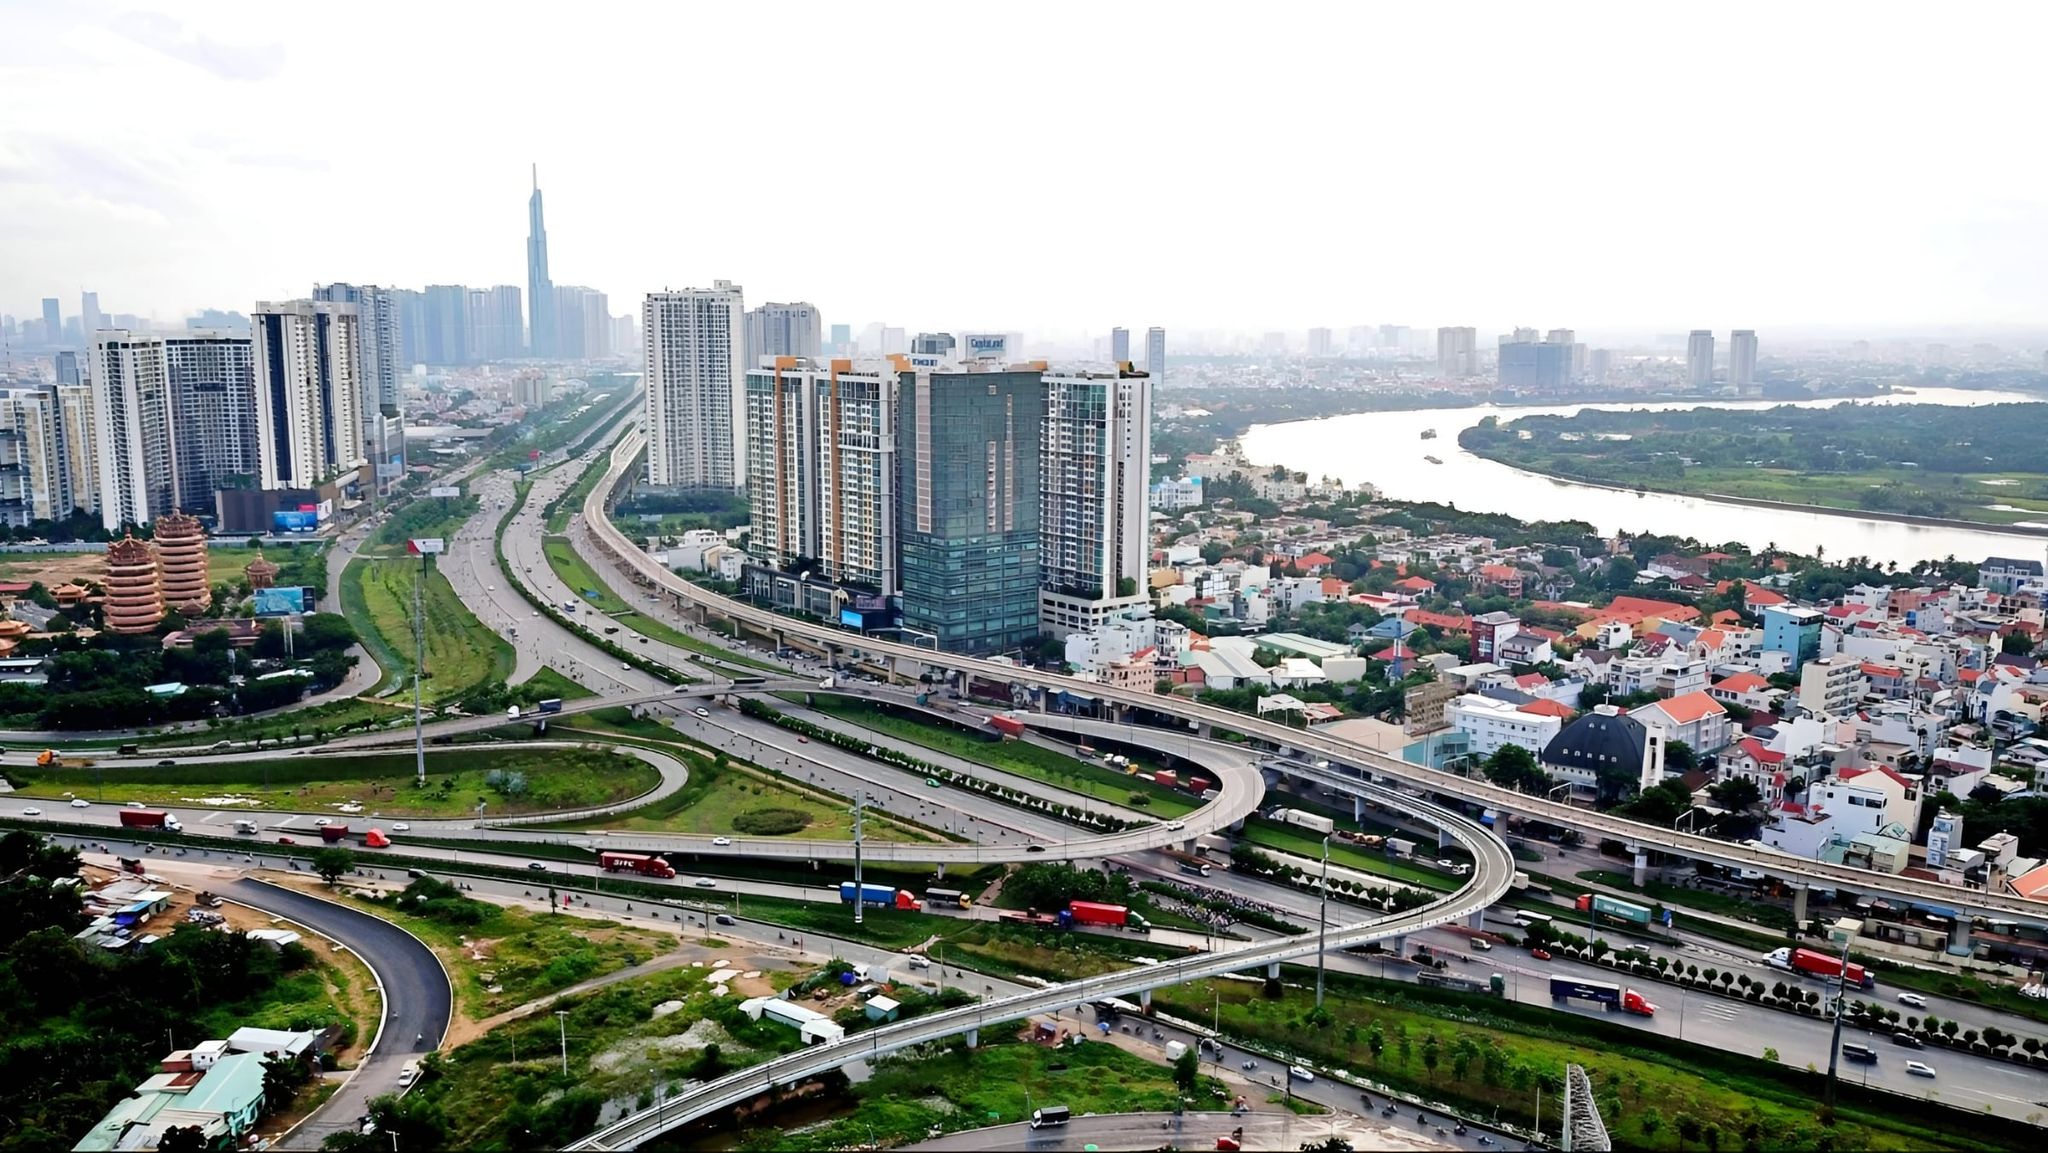 Nâng cấp và mở rộng các con đường huyết mạch để kết nối khu Tây với trung tâm tp.Hồ Chí Minh được thuận tiện và nhanh chóng hơn